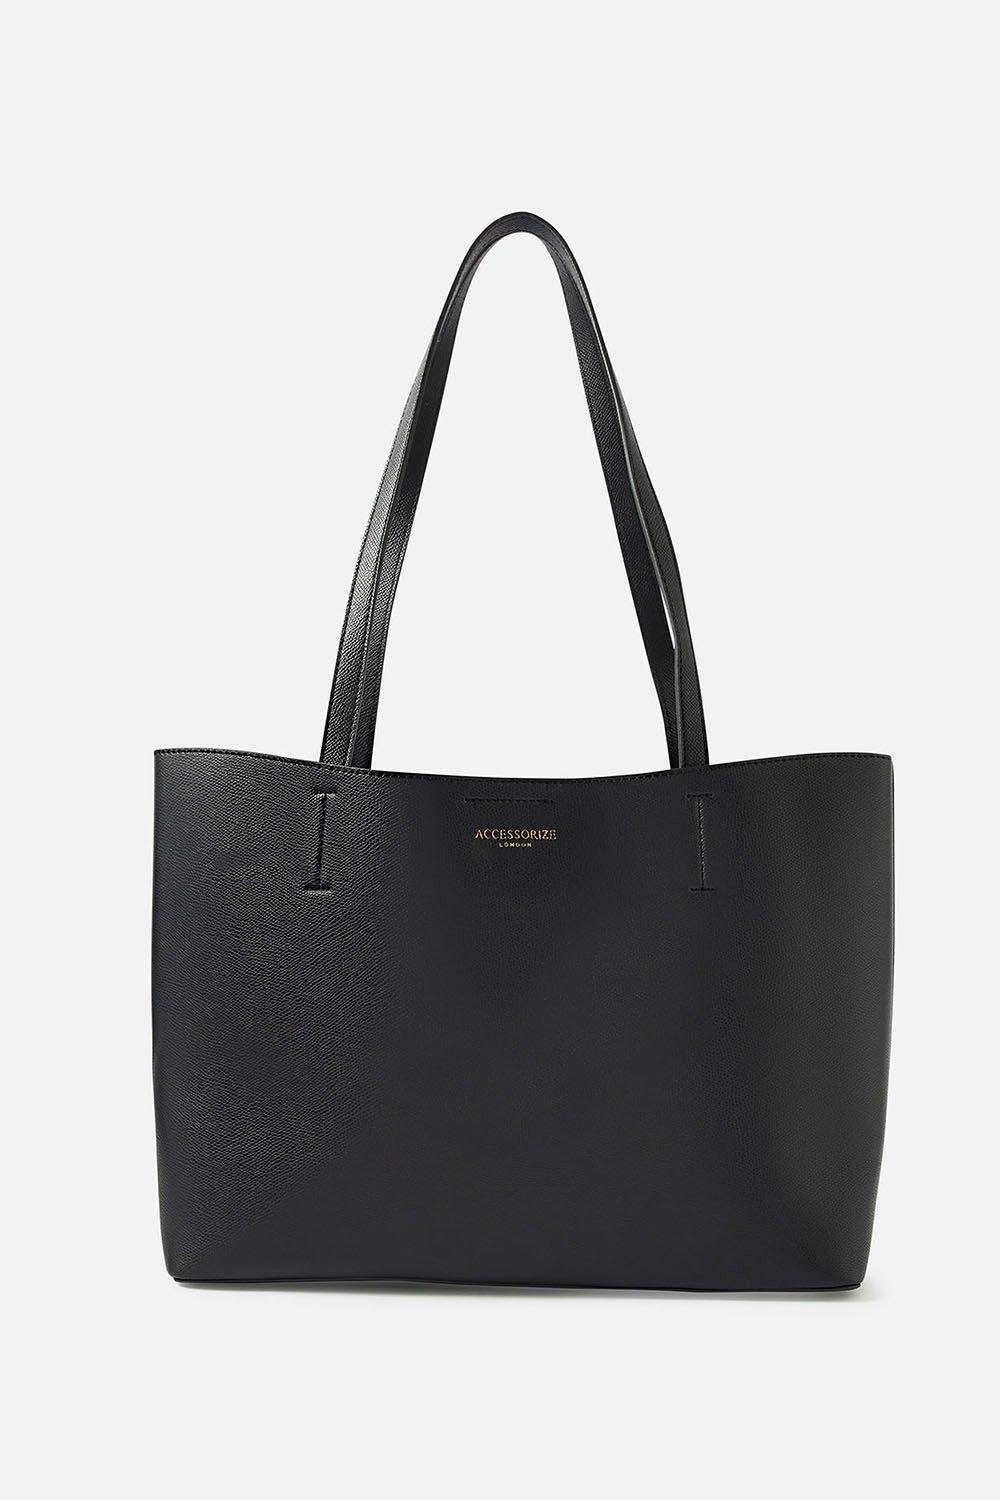 Большая сумка Лео Accessorize, черный сумка с вышивкой пейсли accessorize мультиколор